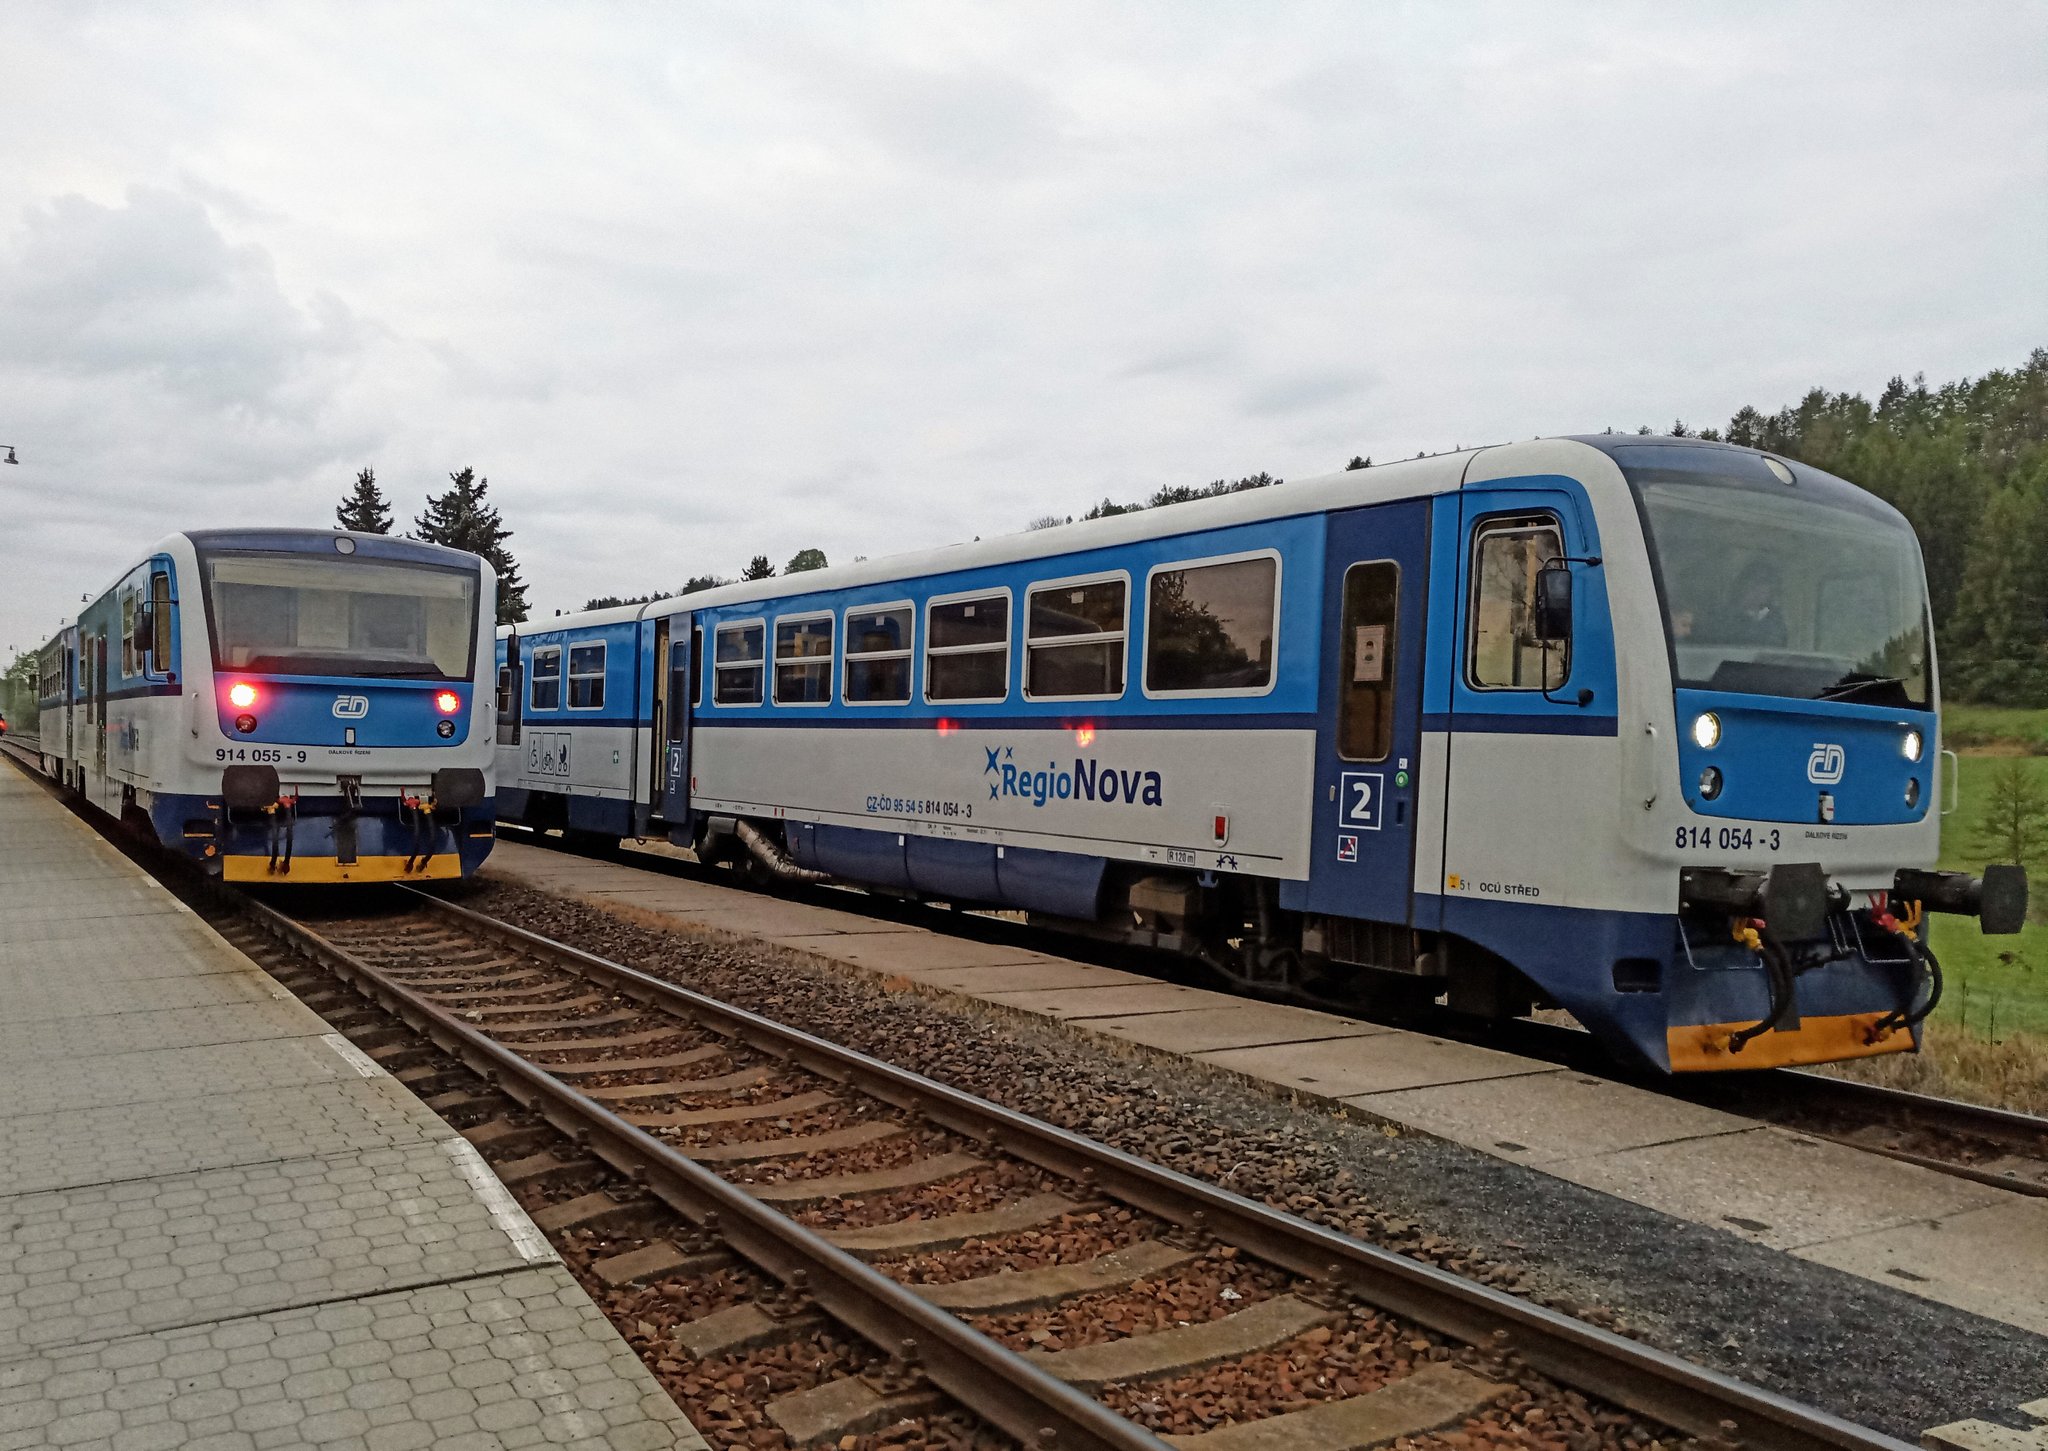 A közép-csehországi Rovensko állomáson kereszteznek a kék-fehér Regionovák (fotó: twitter.com)